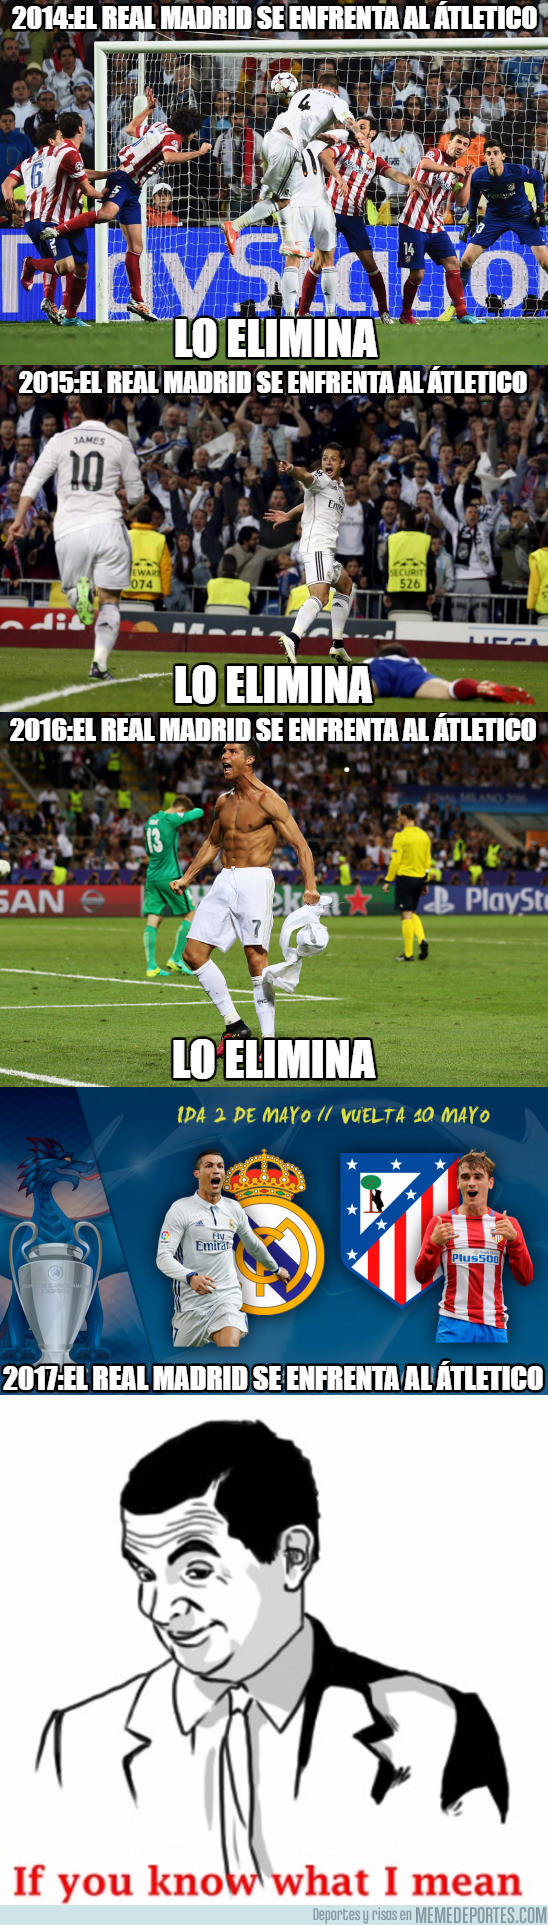 969511 - Según esto, el cruce Real Madrid - Atlético de Madrid ya está definido